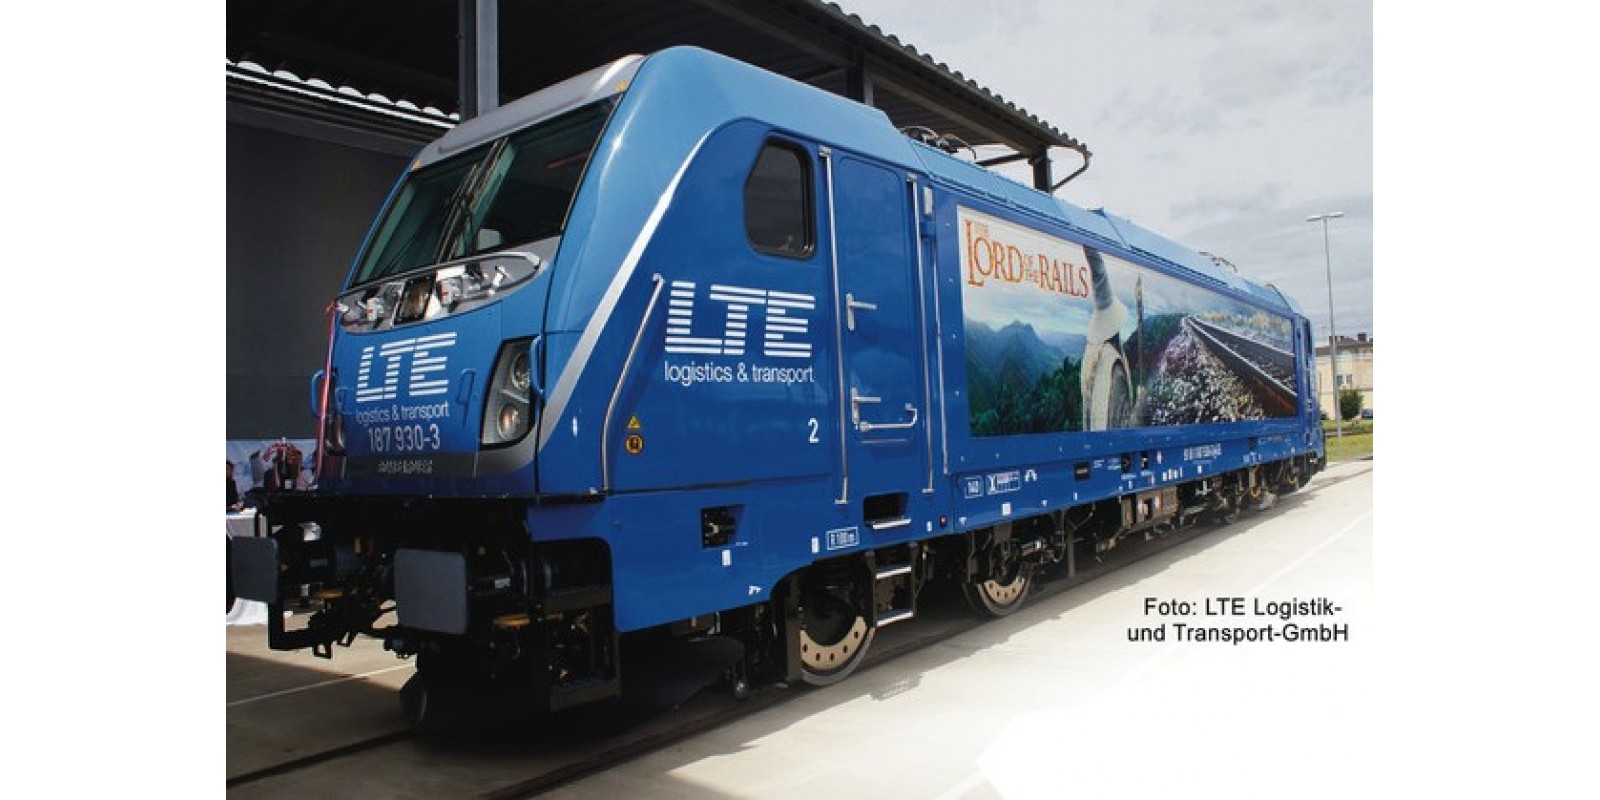 FL738903 - Electric locomotive class 187, LTE